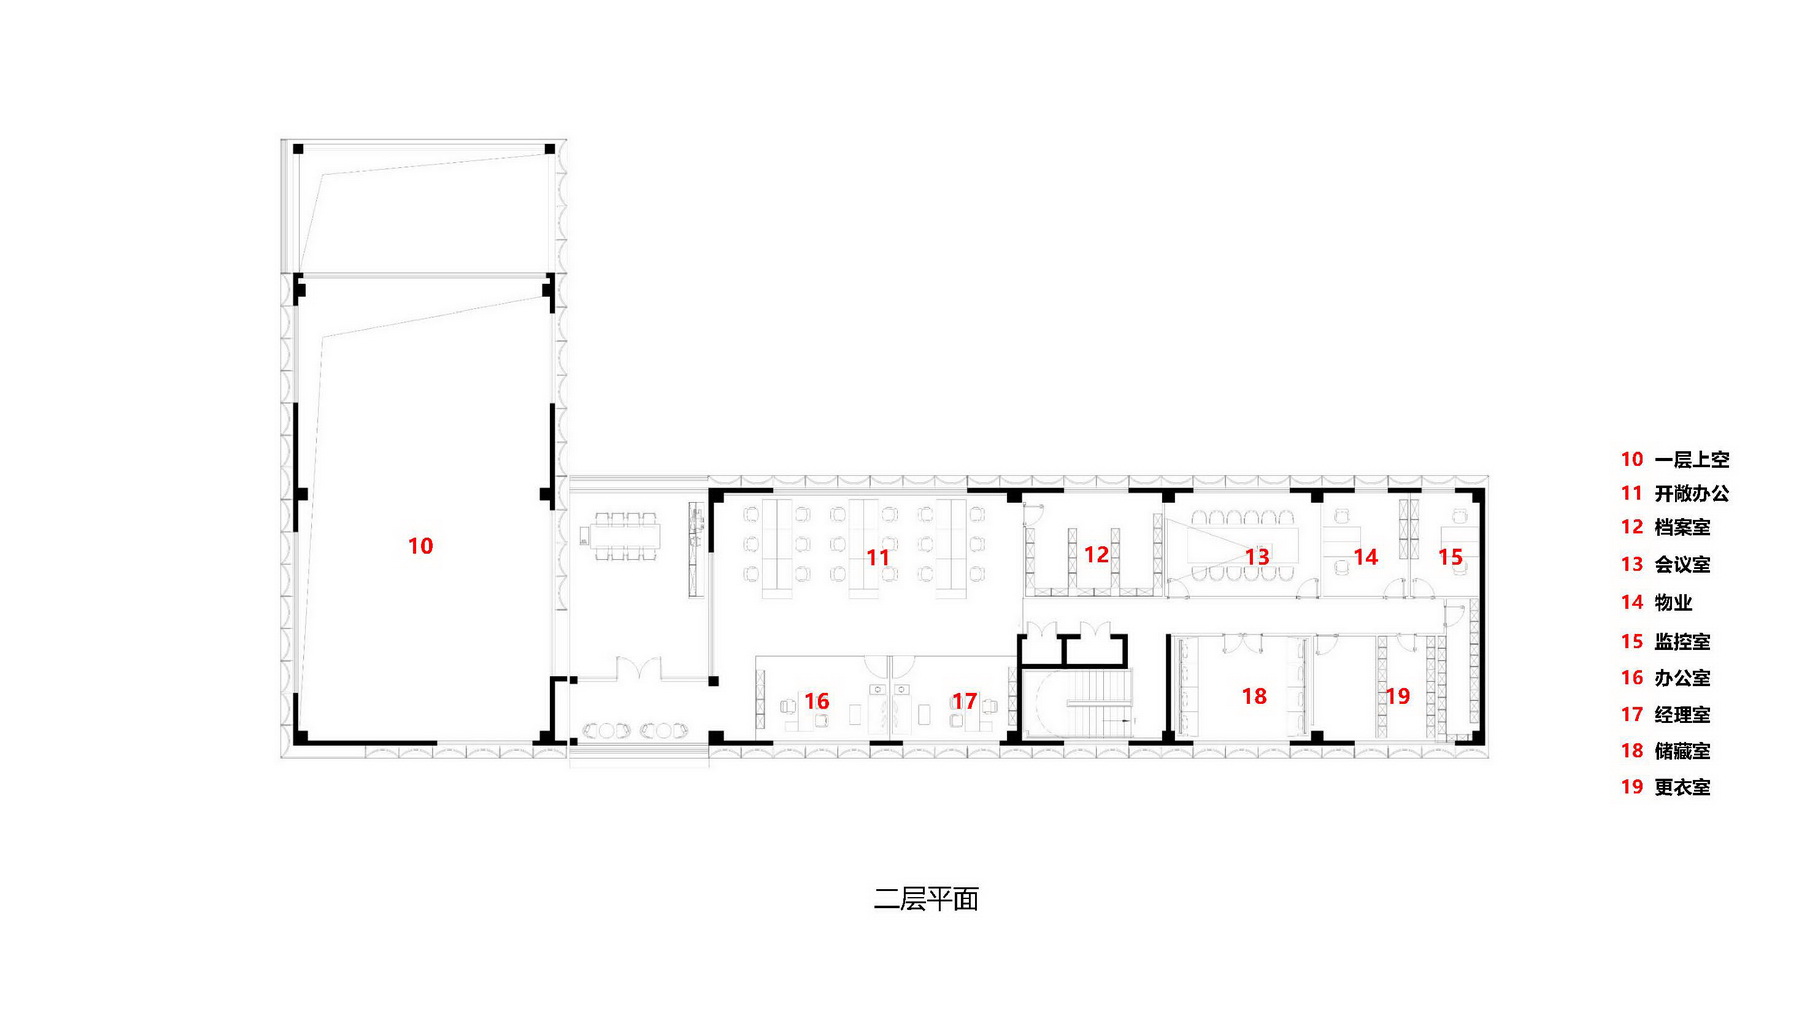 昆山 奥园誉景澜庭售楼处 建筑设计 / 上海天华设计